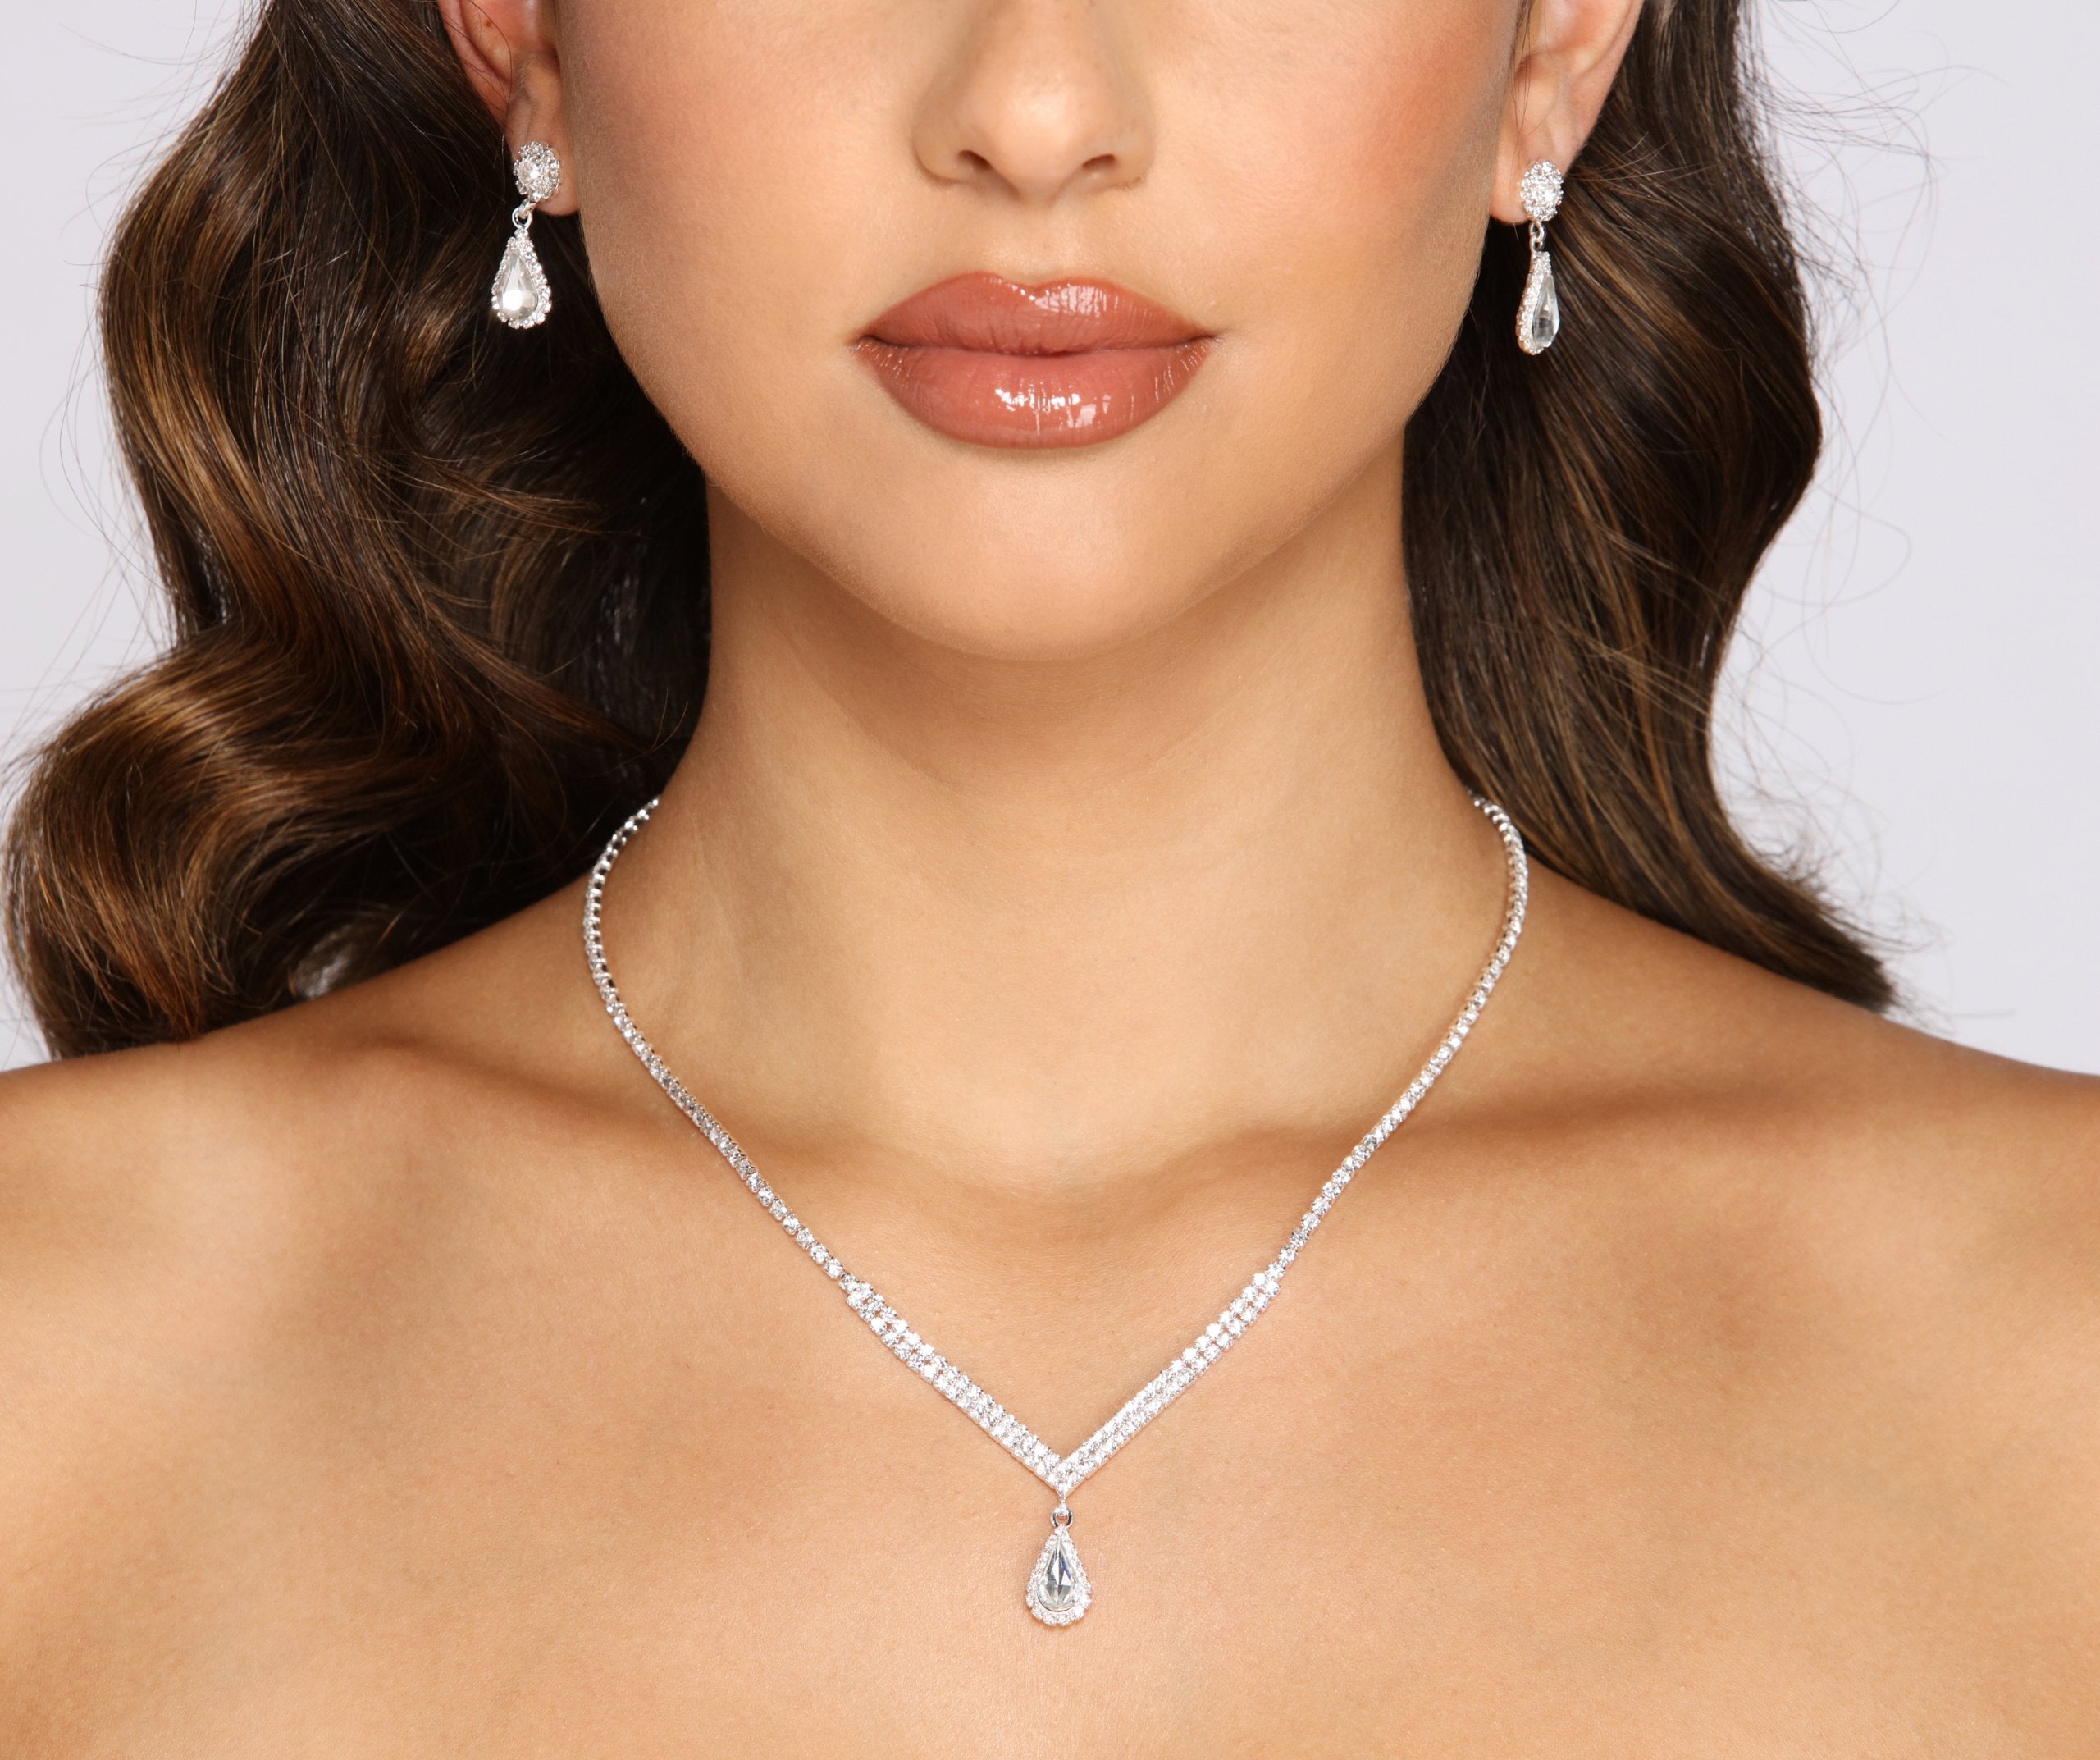 Elegant Style Rhinestone Necklace And Earrings Set